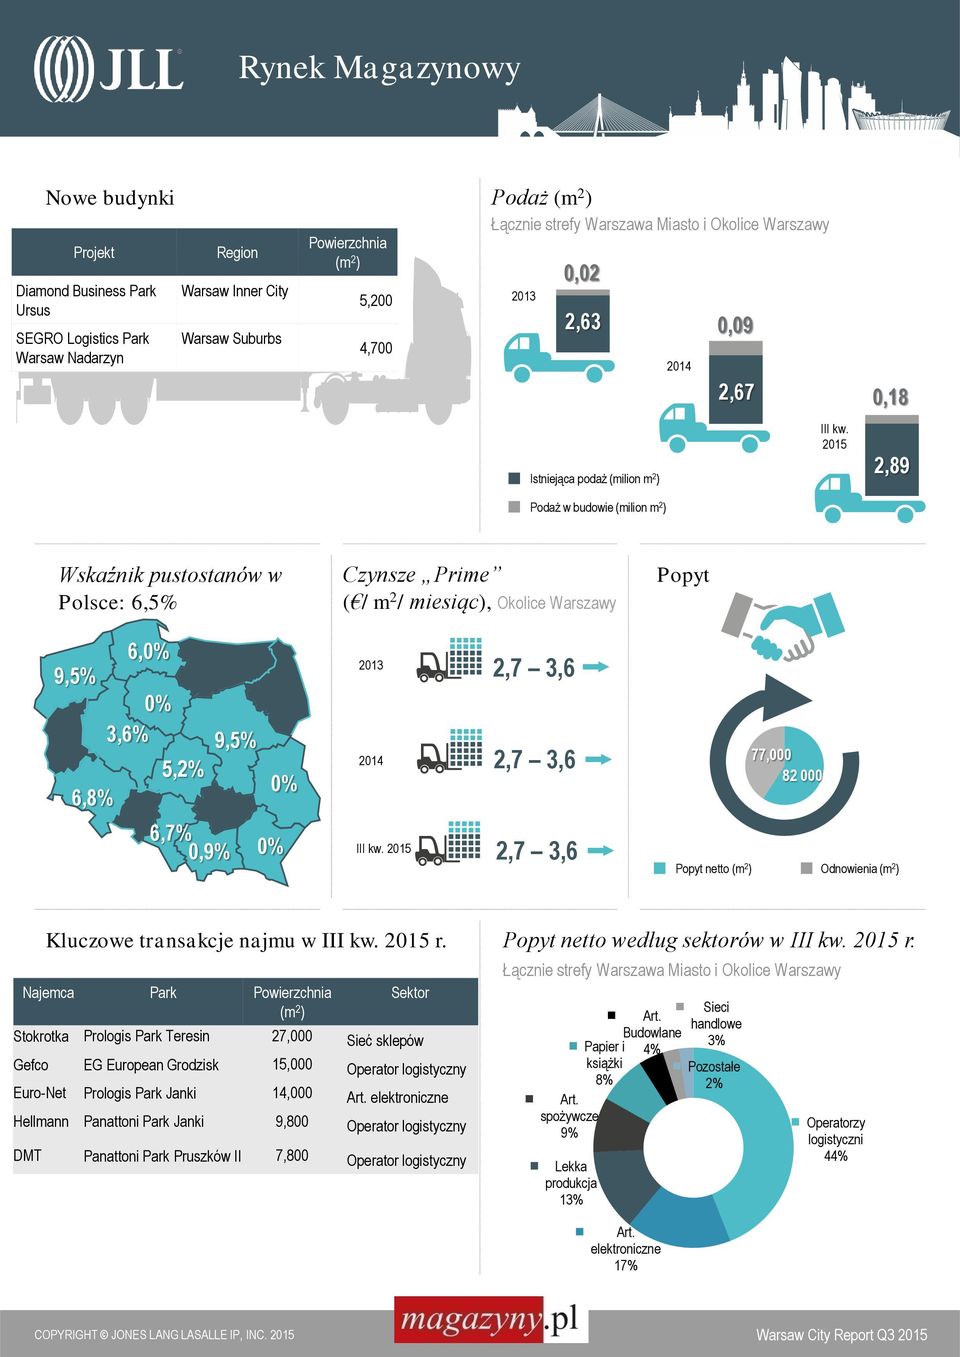 2015 2,89 Podaż w budowie (milion m 2 ) Wskaźnik pustostanów w Polsce: 6,5% 9,5% 6,8% 6, 3,6% 5,2% 6,7% 0,9% 9,5% Czynsze Prime ( / m 2 / miesiąc), Okolice Warszawy 2013 2,7 3,6 2014 2,7 3,6 III kw.